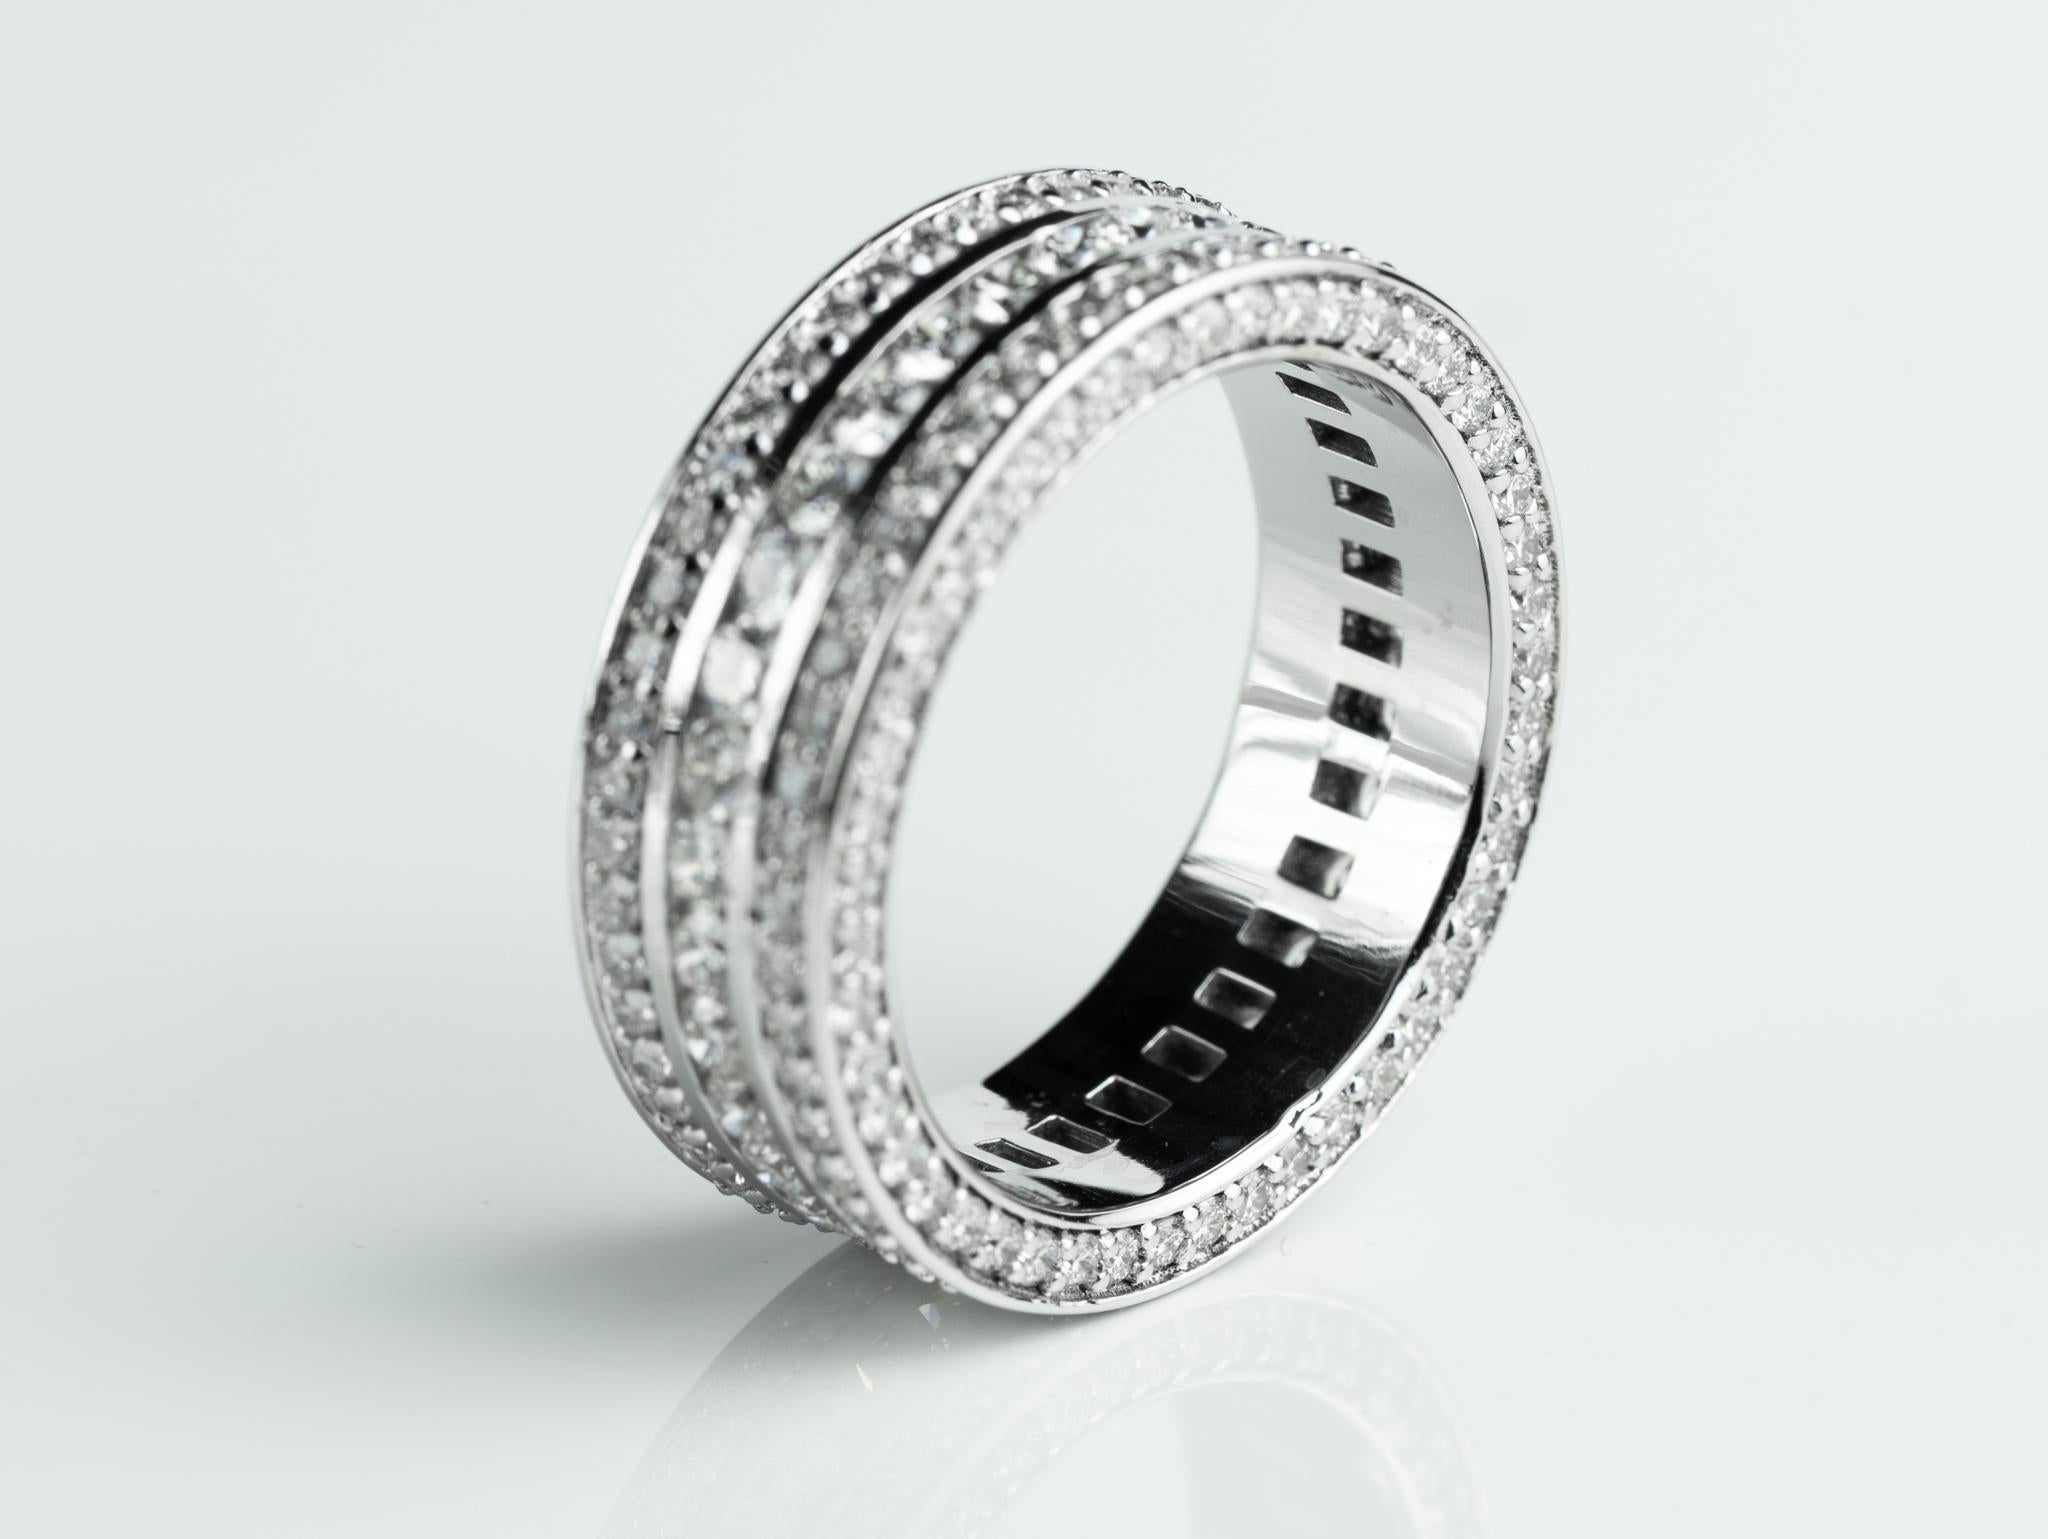 men's diamond ring price in india